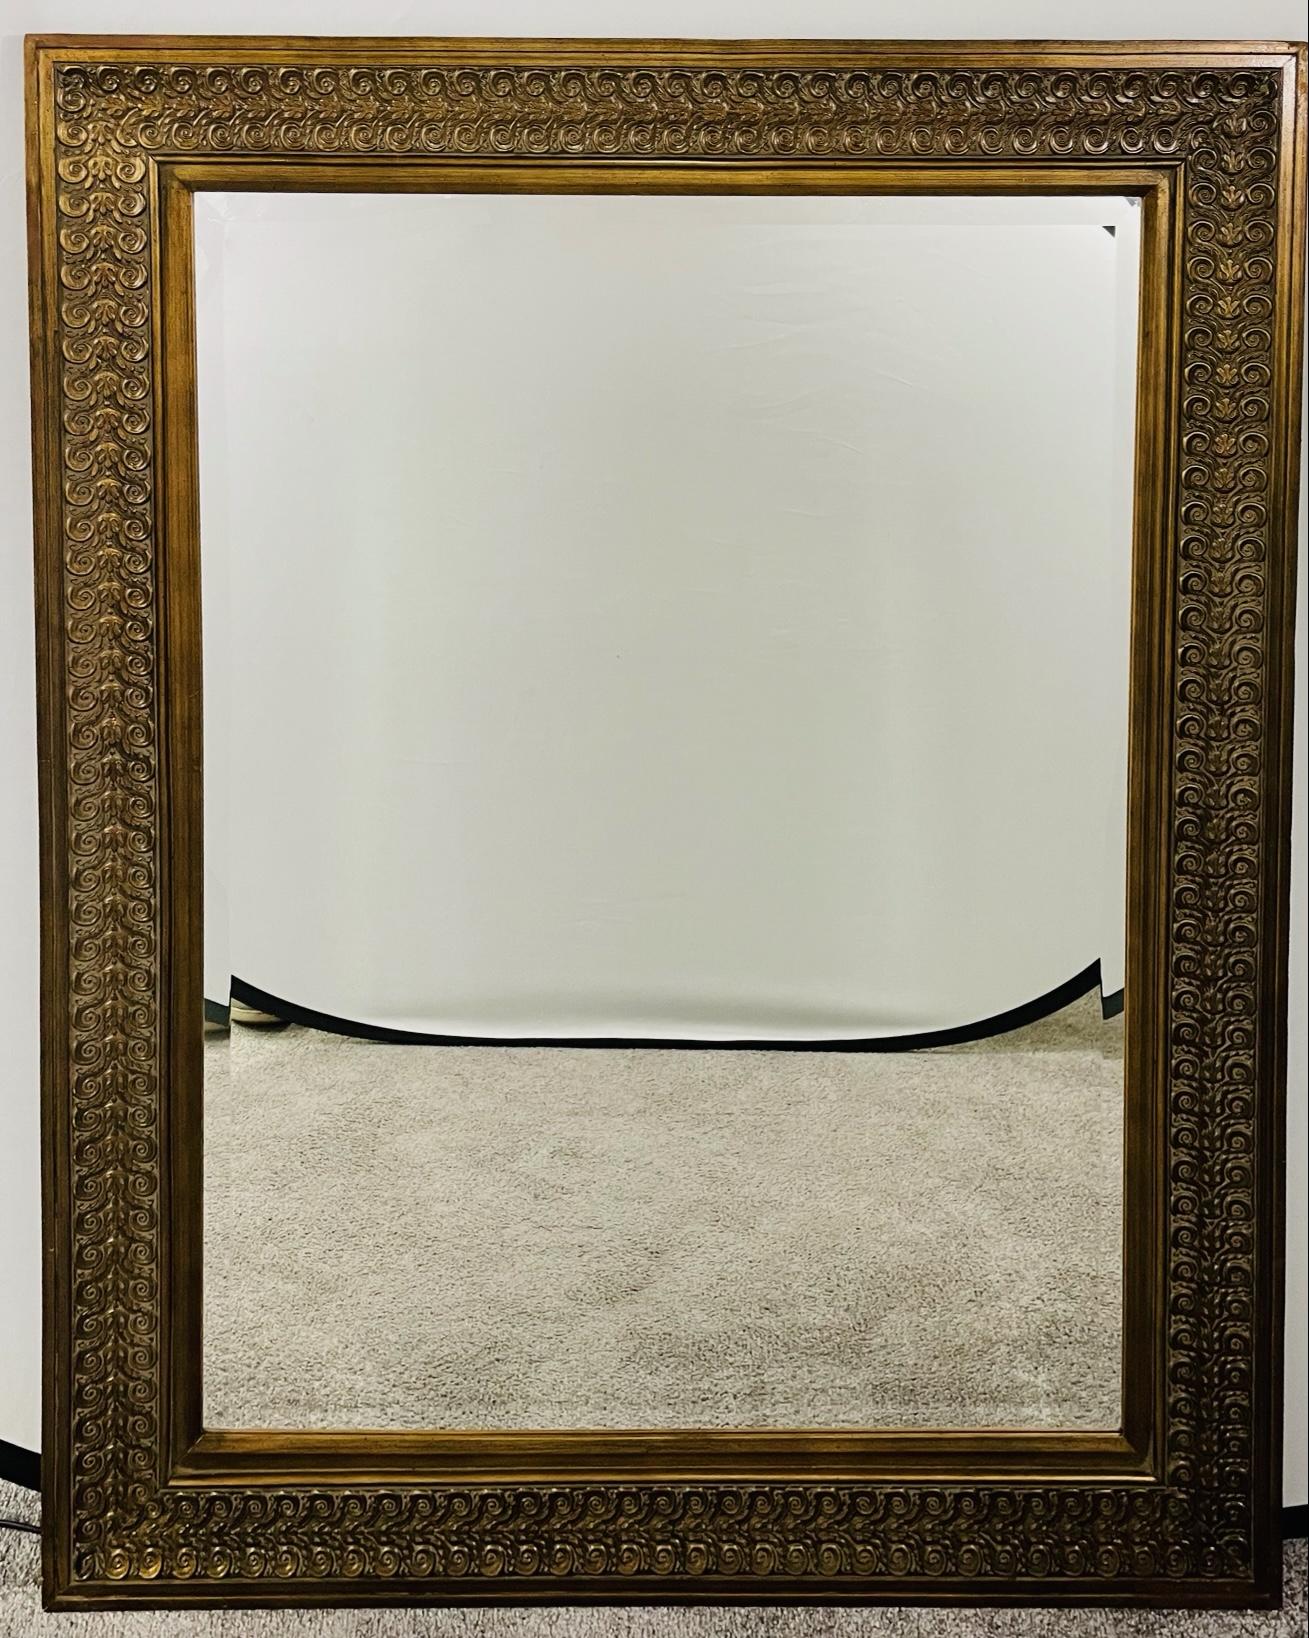 Ein edler und eleganter Wand- oder Kaminsims-Spiegel aus Mahagoni mit abgeschrägtem Glas. Der Spiegelrahmen ist robust und fein von Hand geschnitzt mit Akanthus und Scrolls Muster Design und gekonnt mit einem Hauch von Gold gemalt. Eine schöne